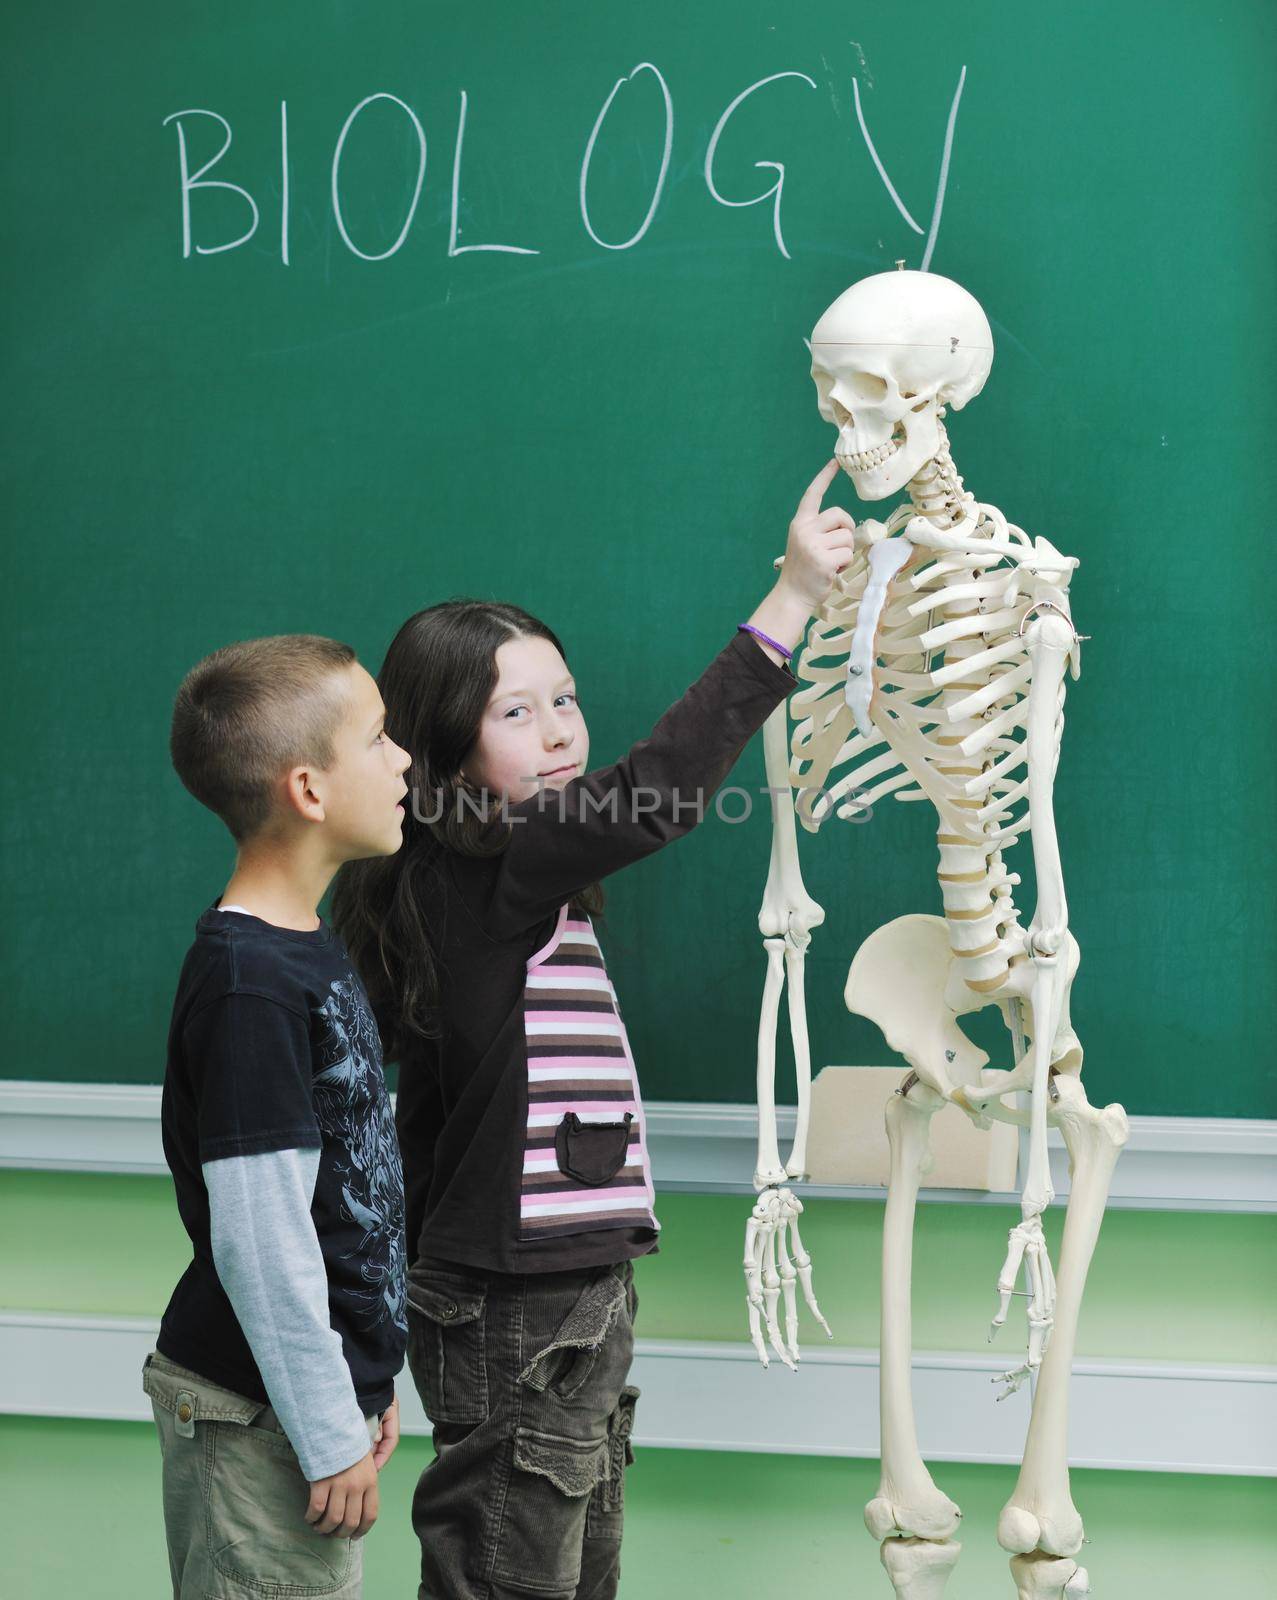 learn biology in school by dotshock